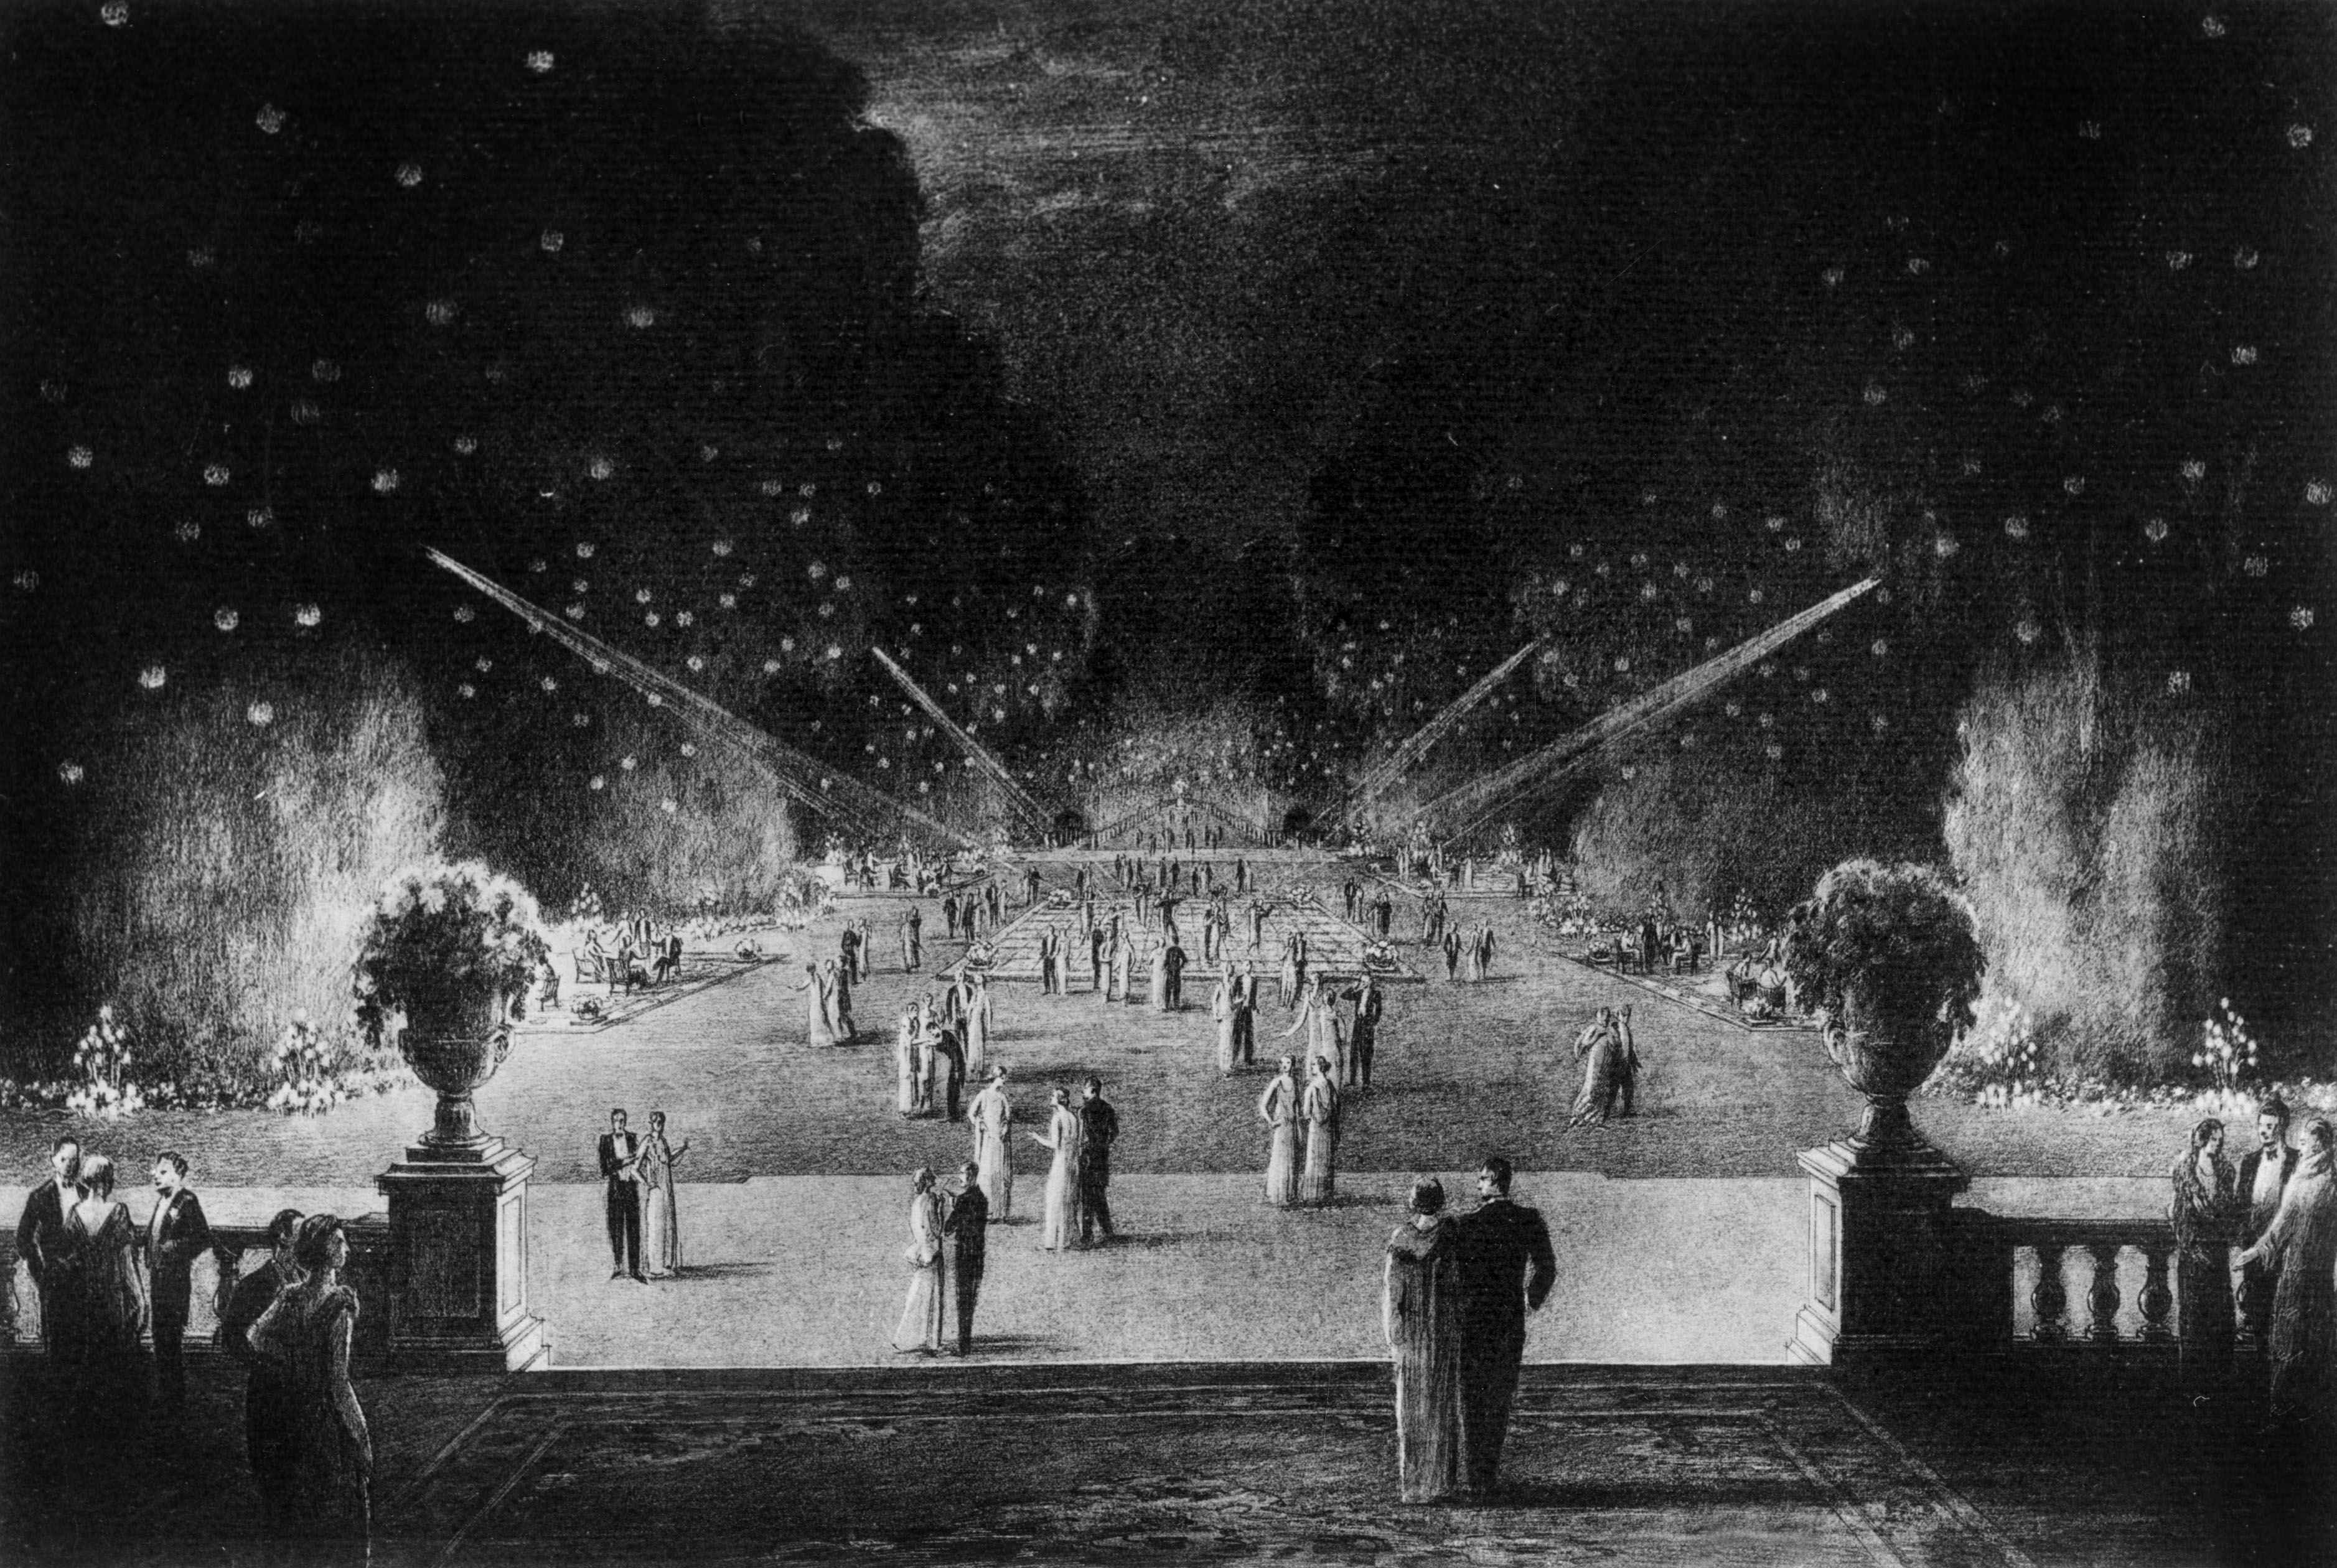 Un
soir de réception dans les jardins de l’ambassade d’Autriche-Hongrie.
Dessin au crayon, vers 1920.